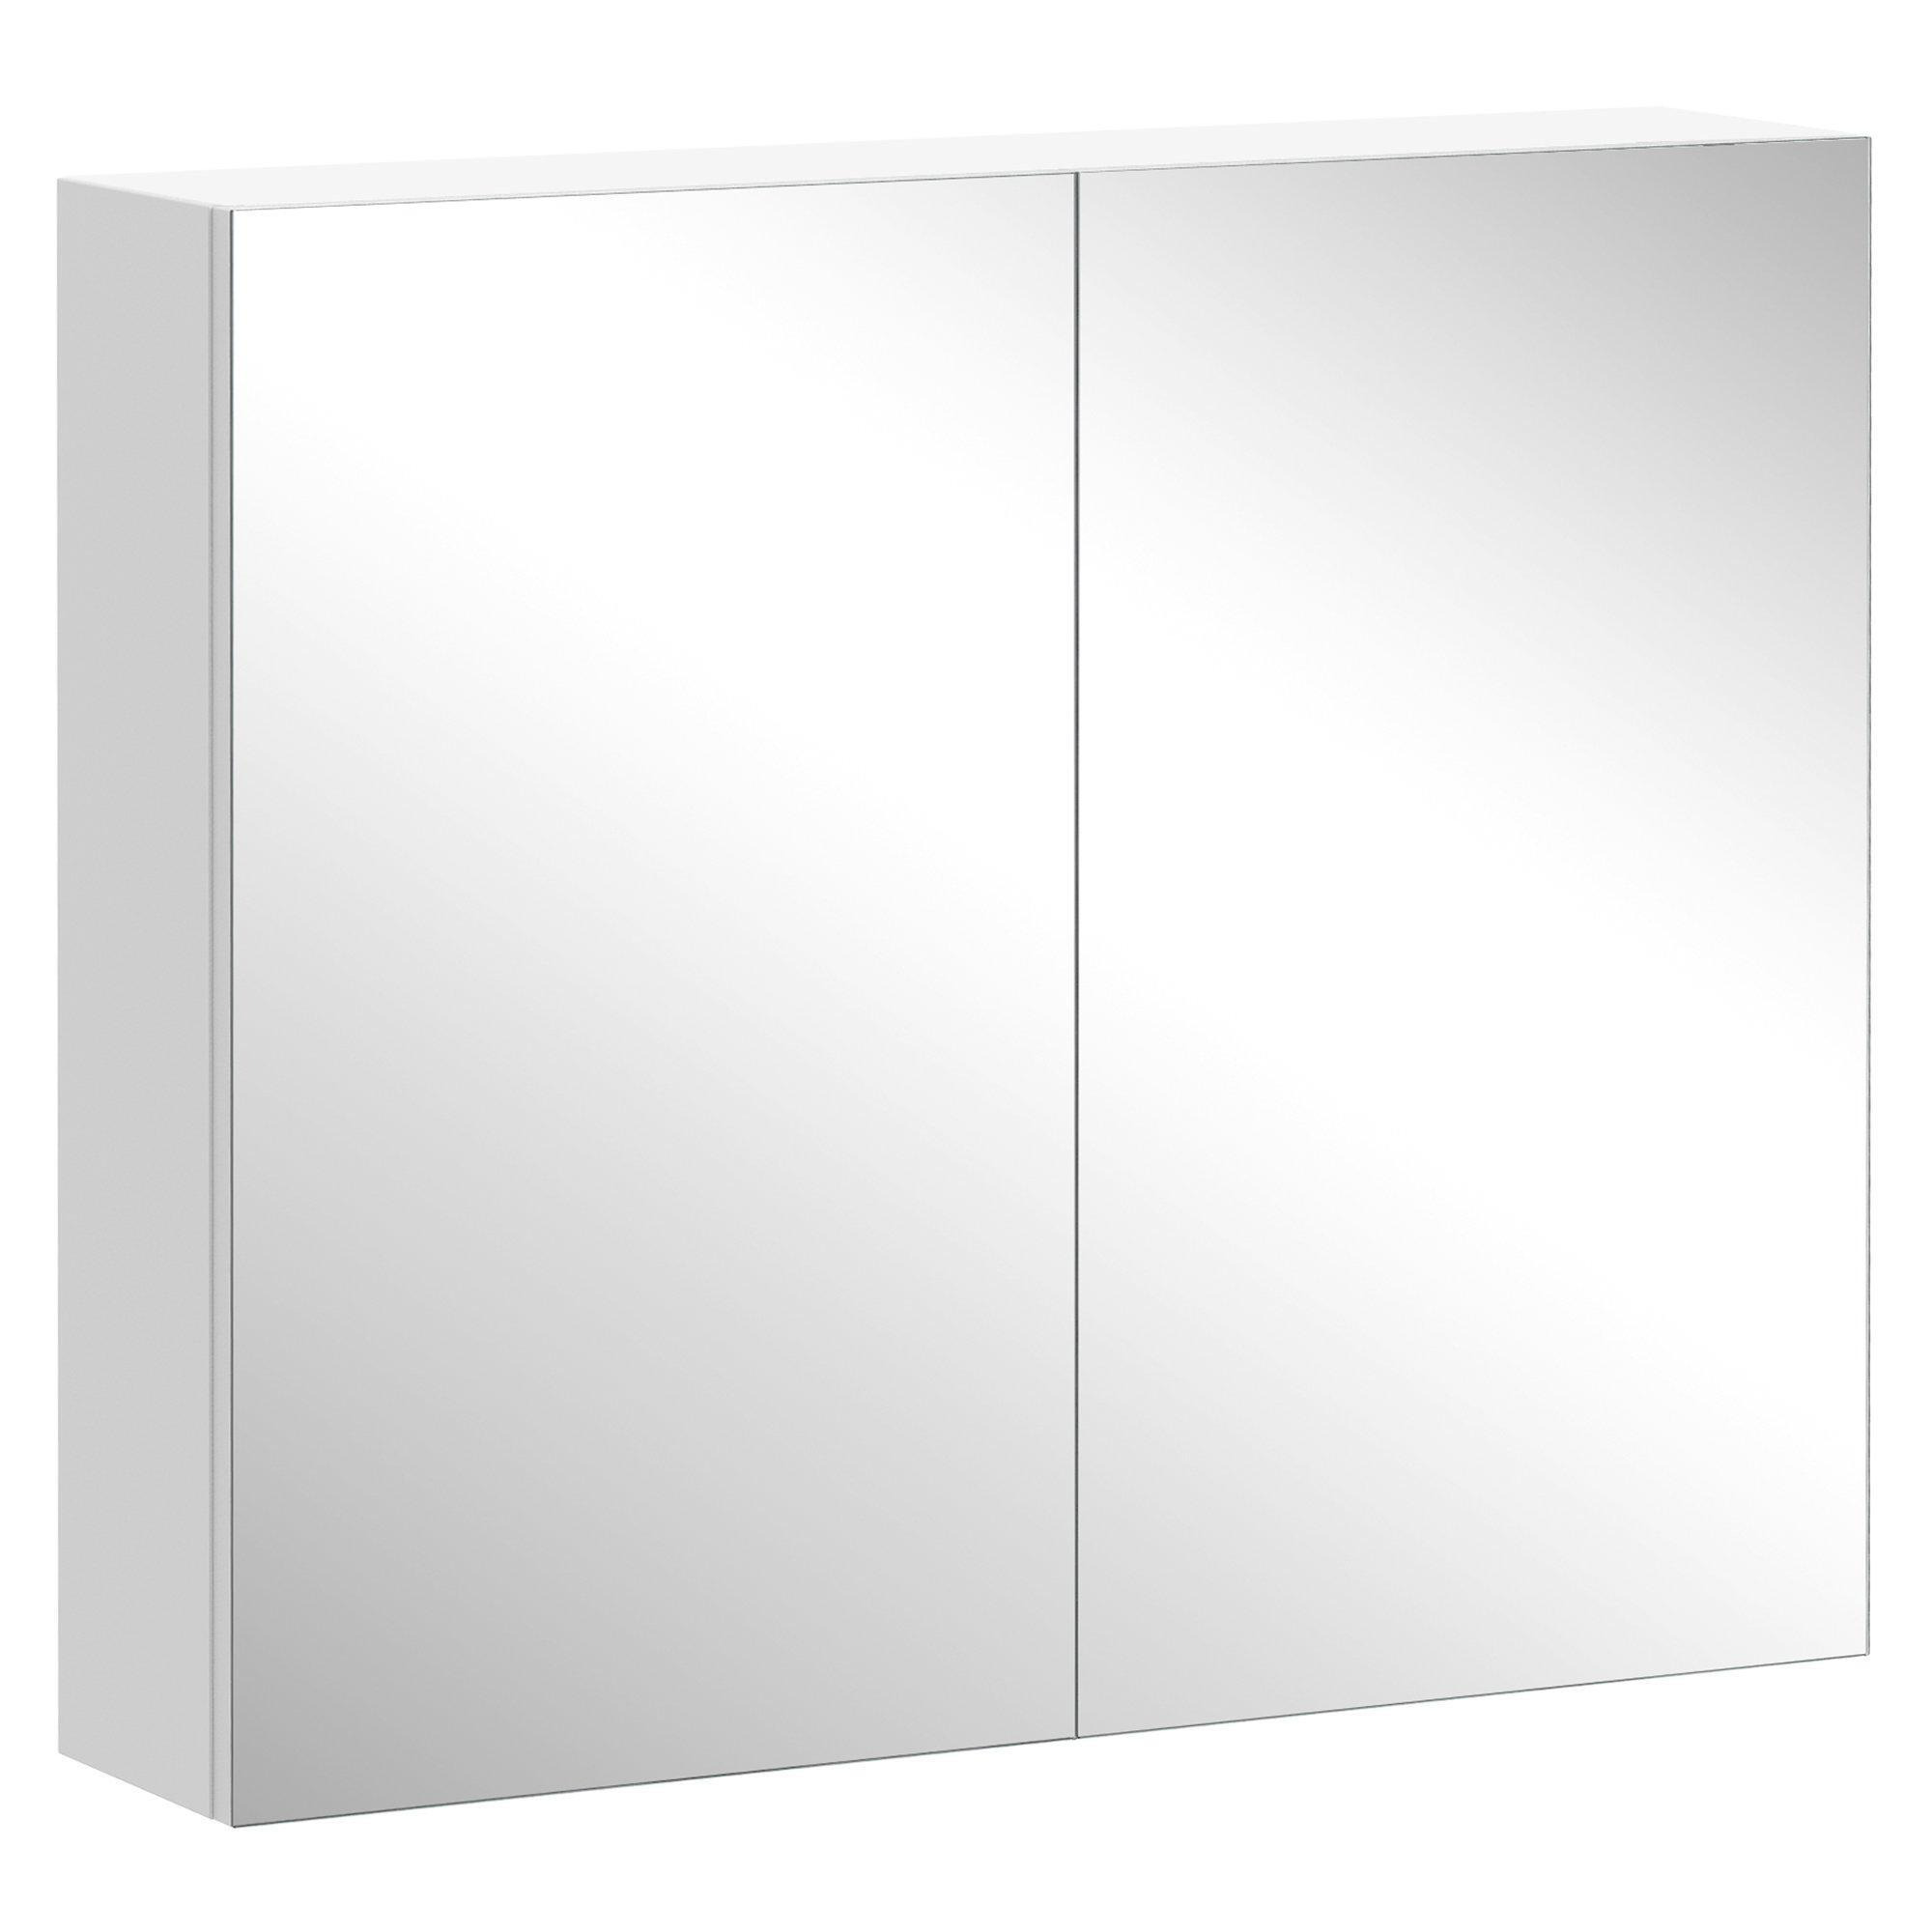 Wall Mount Mirror Cabinet Storage Bathroom Cupboard Double Door - image 1